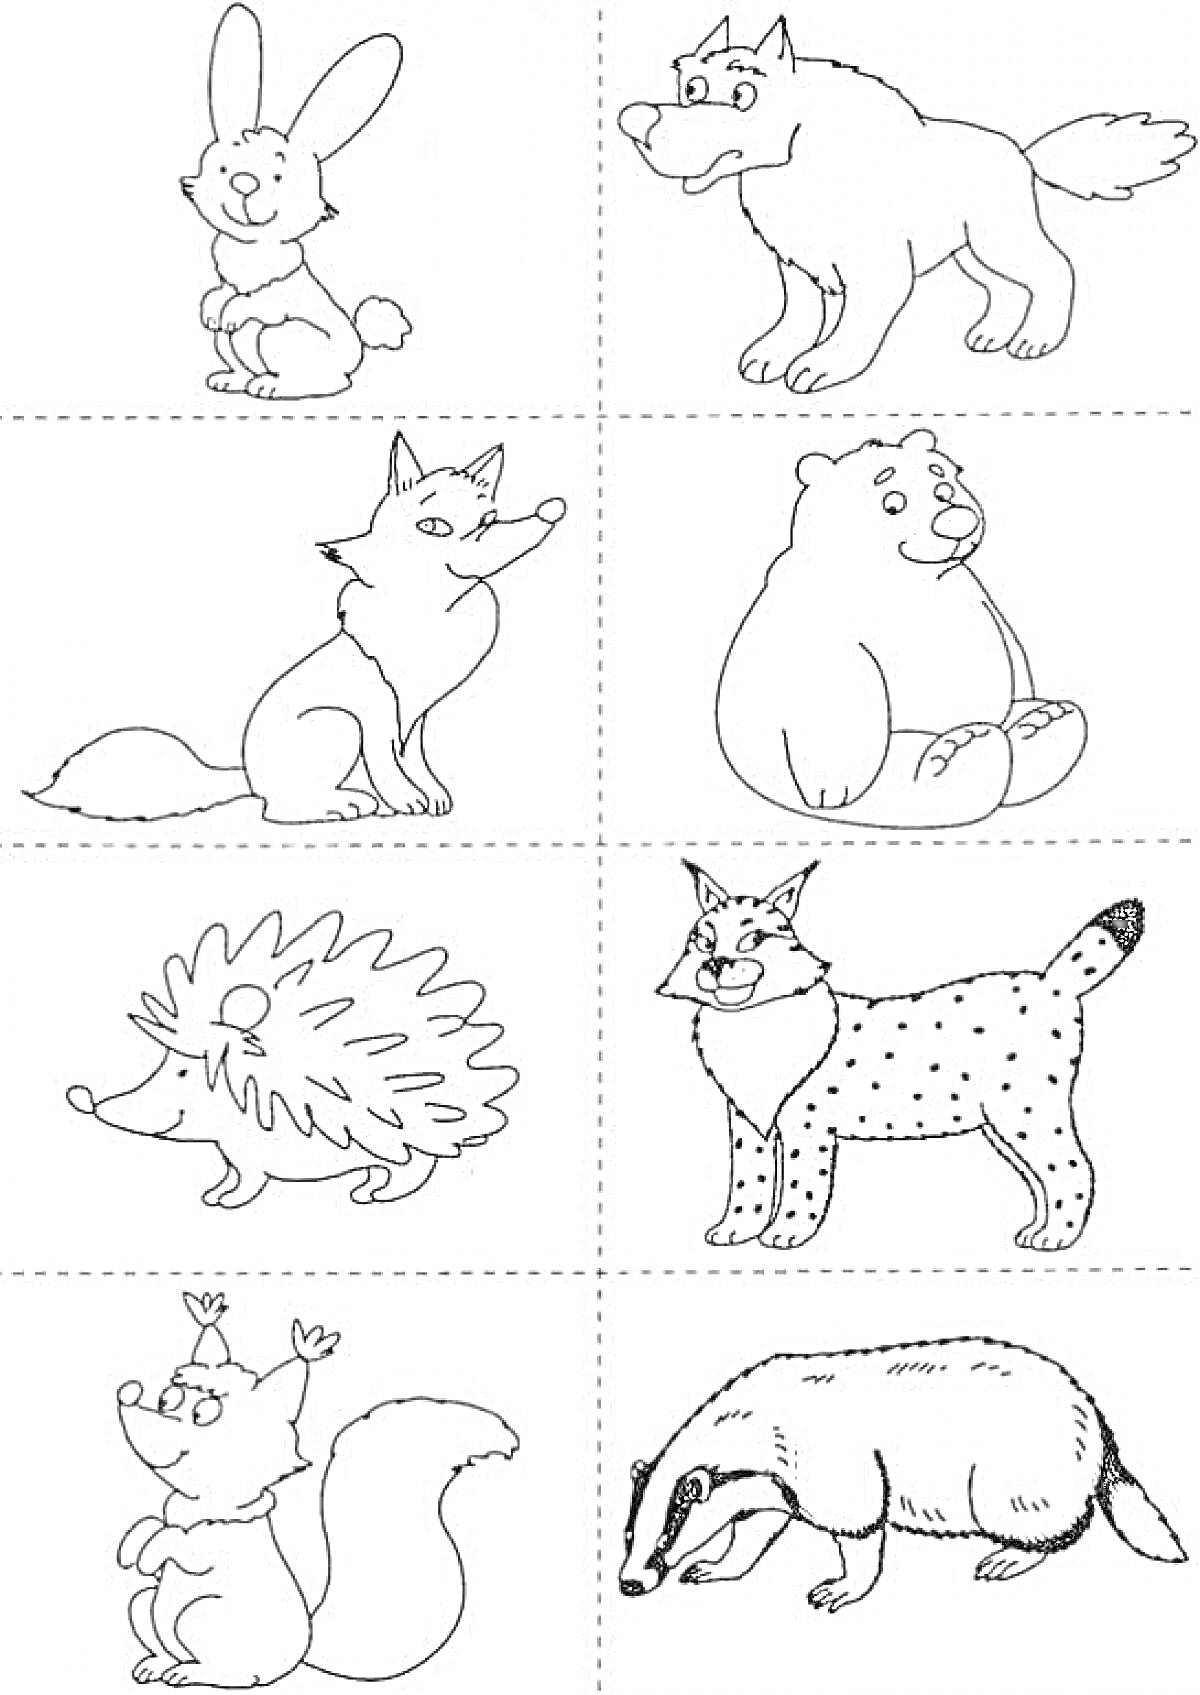 Раскраска Раскраска с дикими животными для детей 5-7 лет (заяц, волк, лиса, медведь, ёж, рысь, белка, барсук)